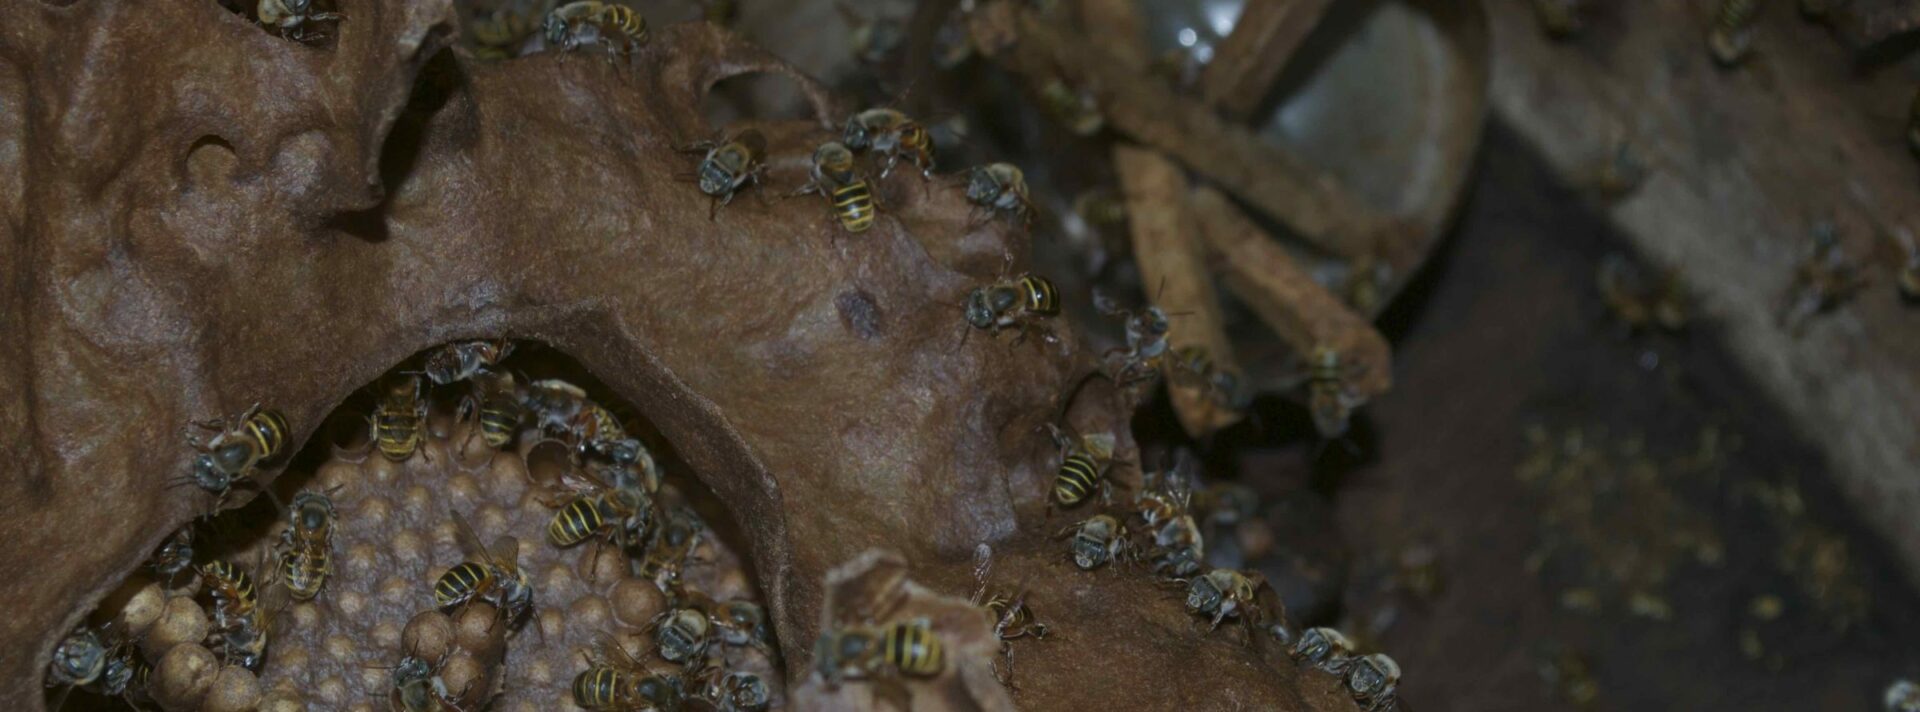 Colmenas en adopción: el proyecto que busca salvar a las abejas nativas en la Península de Yucatán